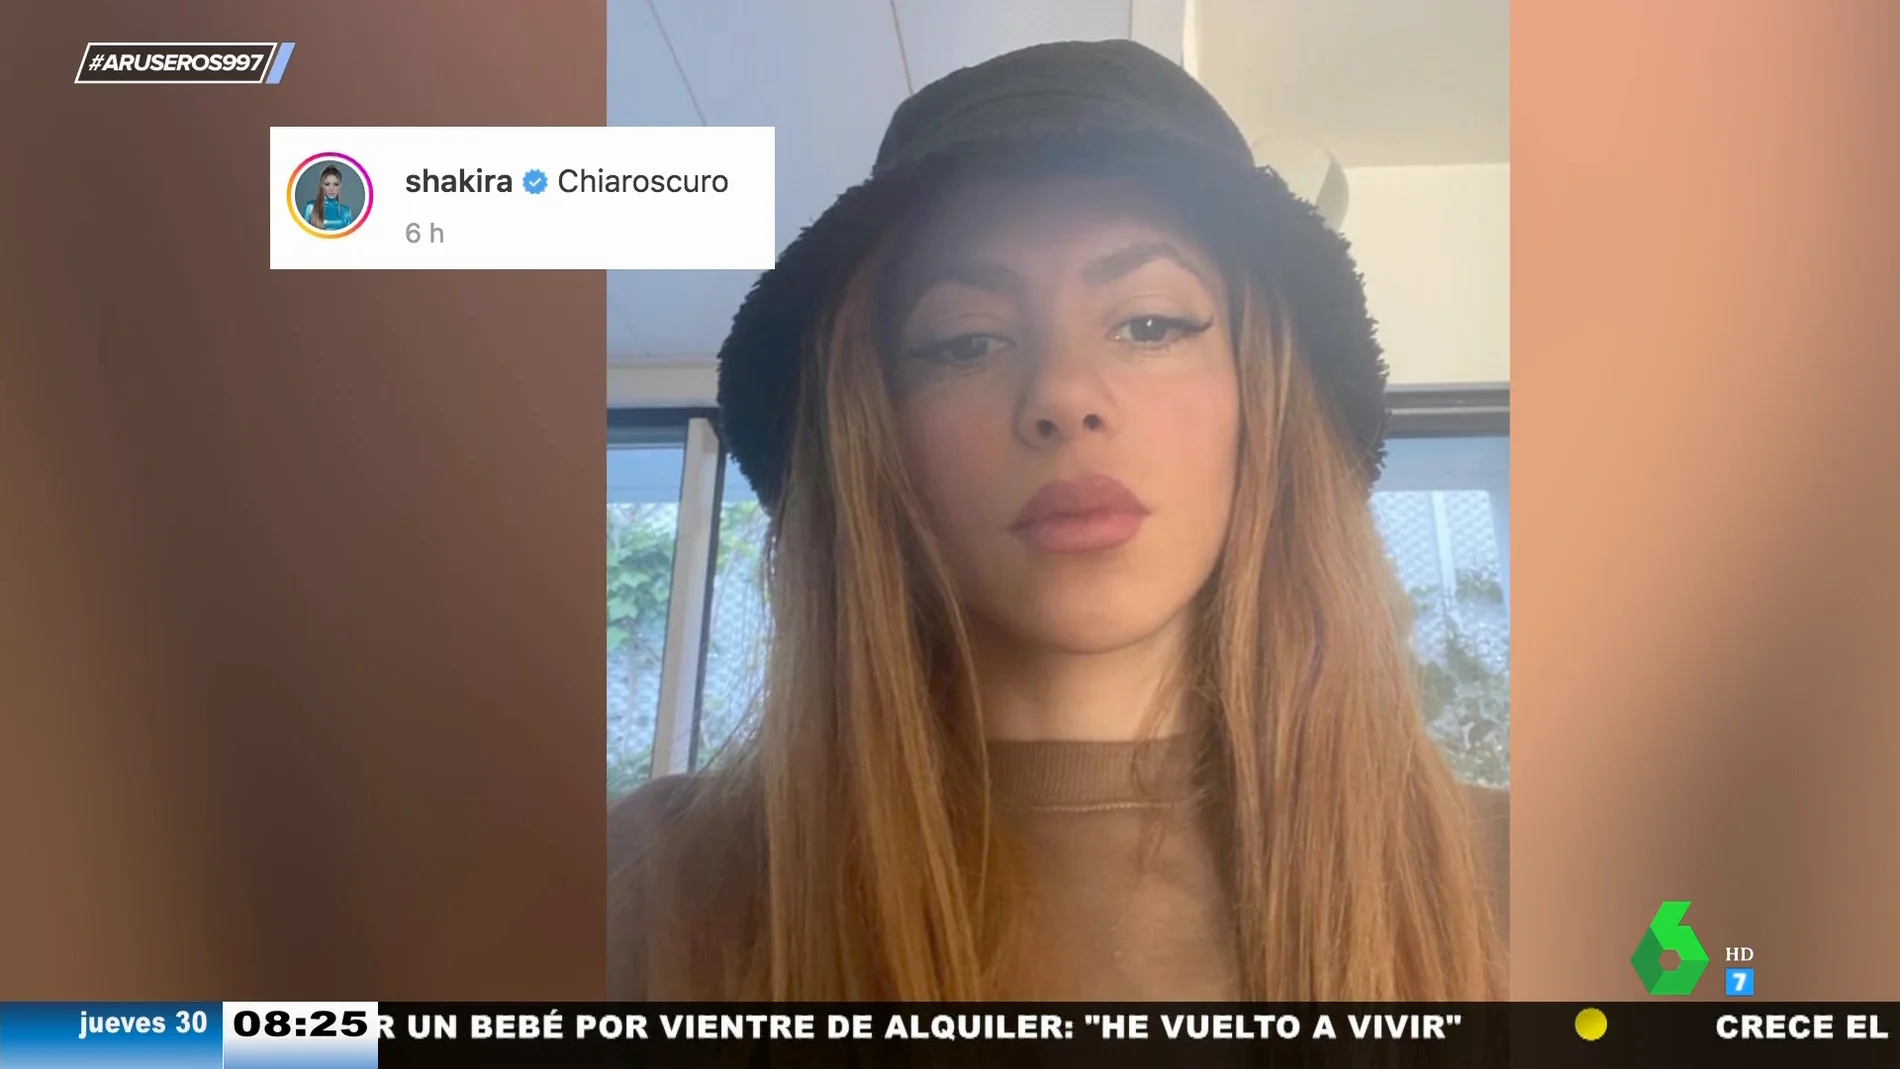 El selfie viral de Shakira con una posible indirecta a Clara Chía, novia de Gerard Piqué: "Chiaroscuro"